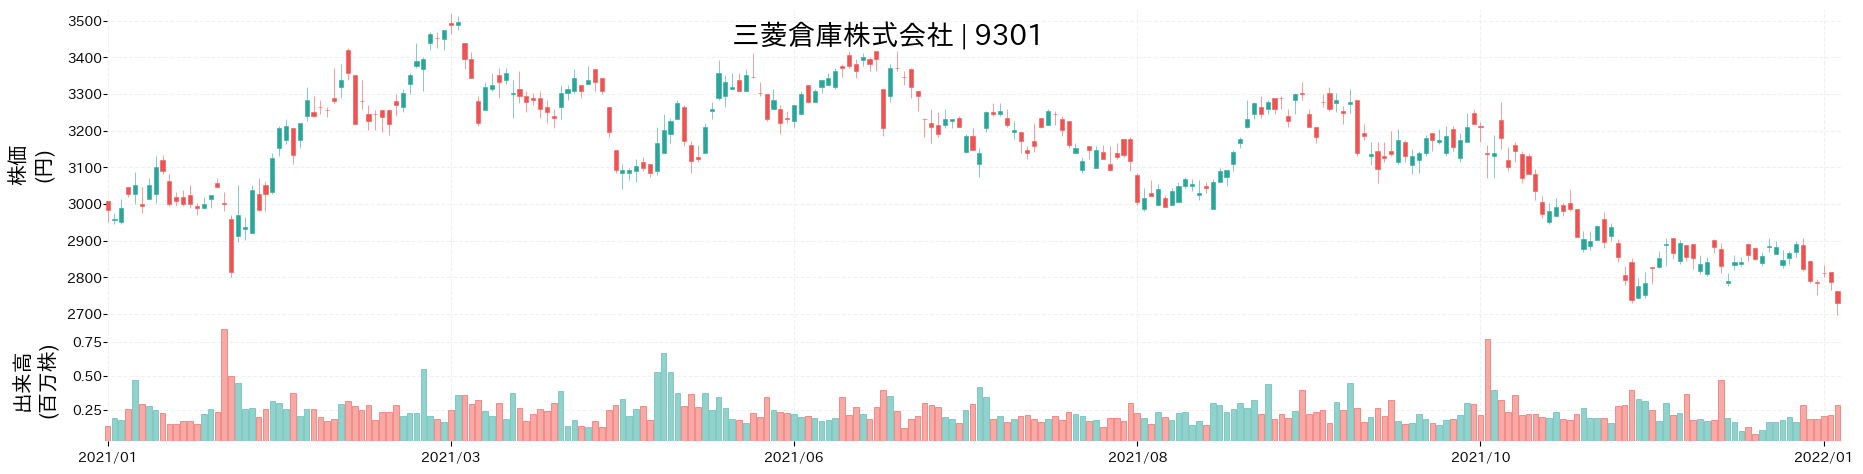 三菱倉庫の株価推移(2021)